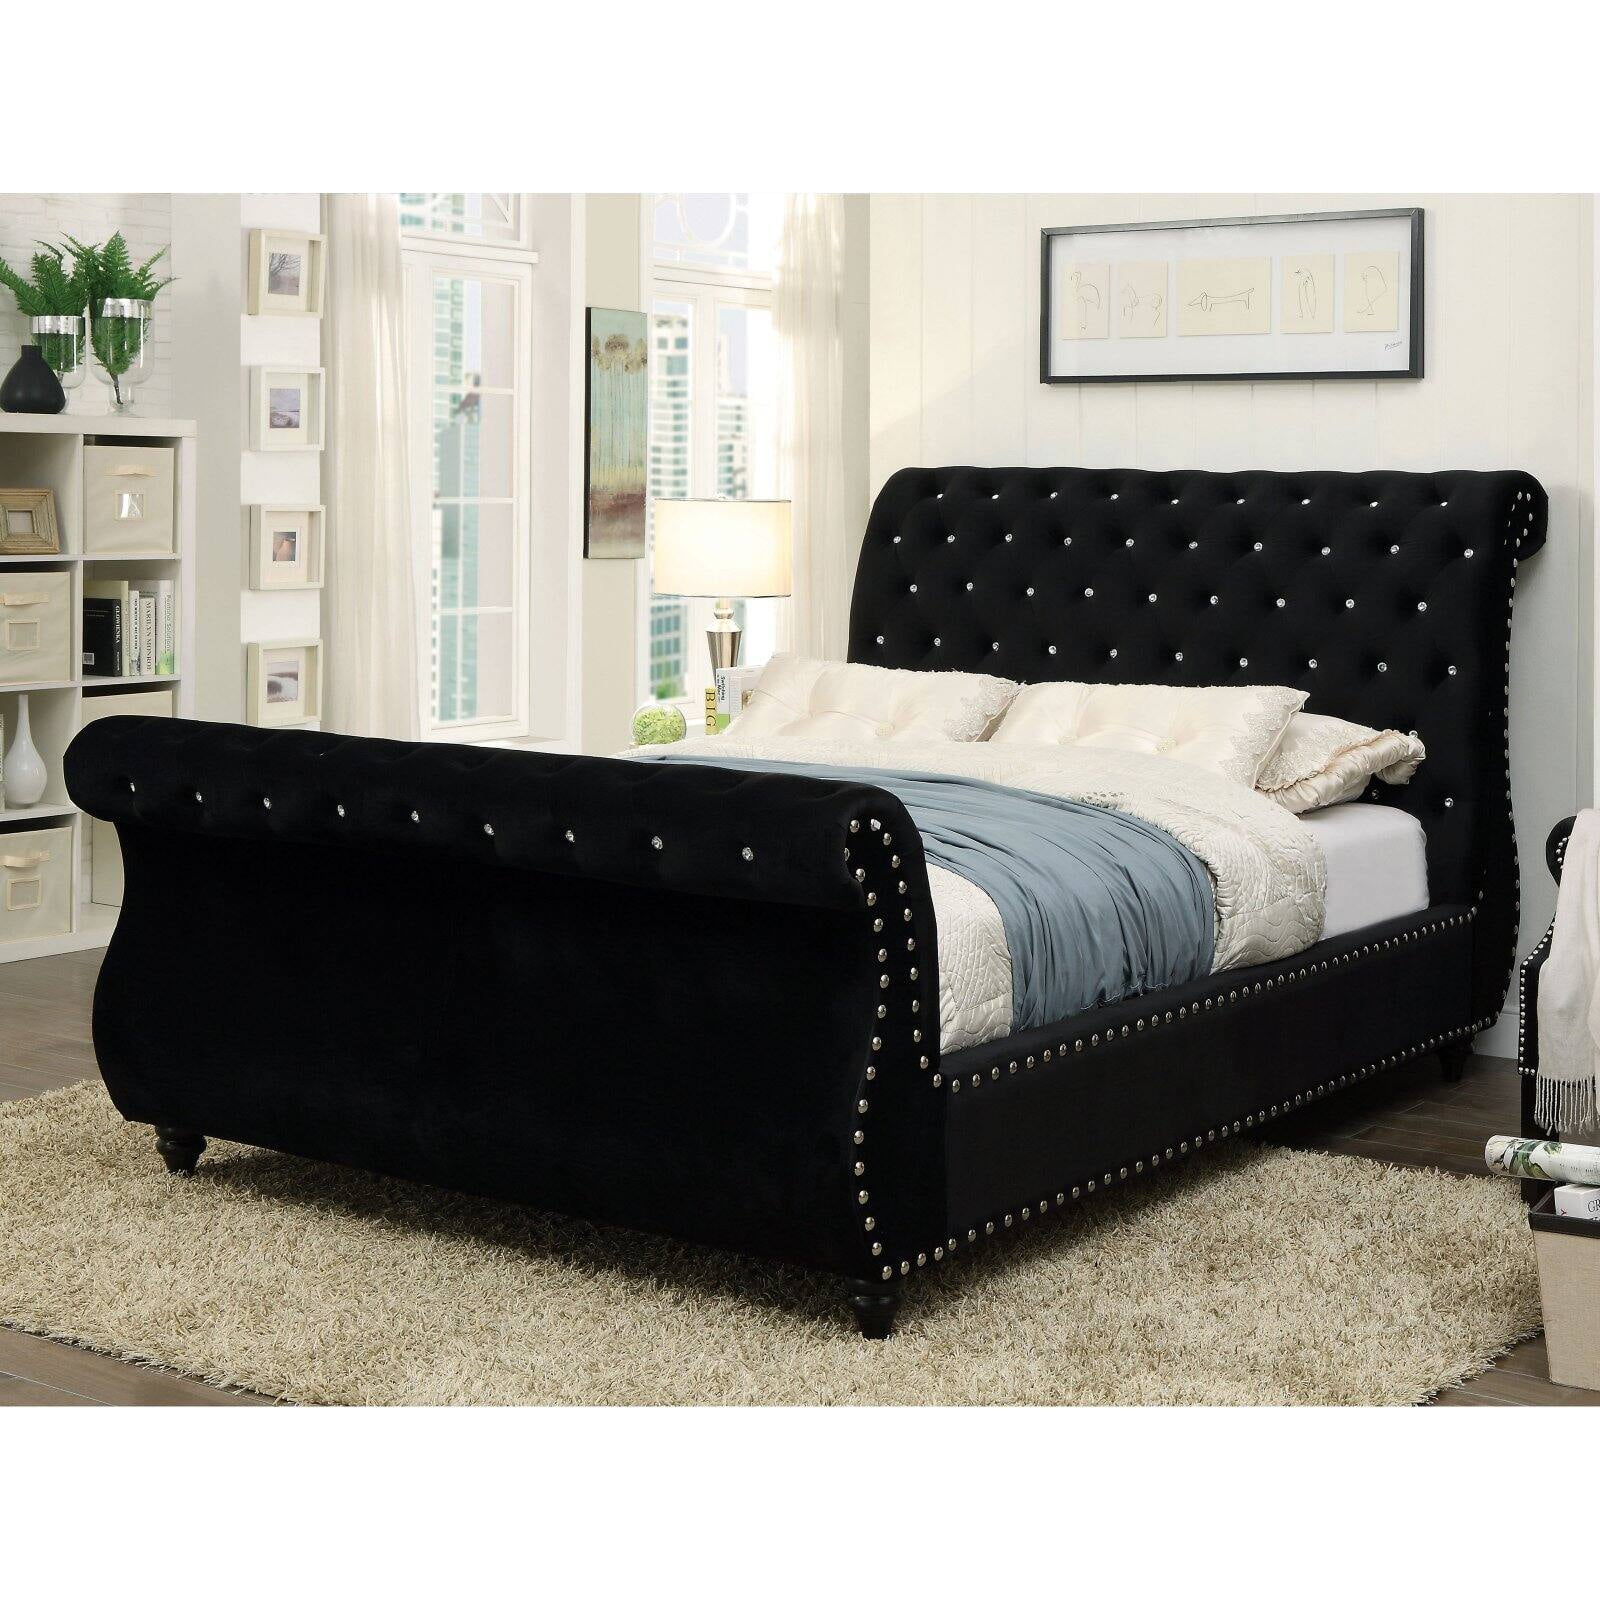 Minimalist Modern Sleigh Bed With Luxury Interior